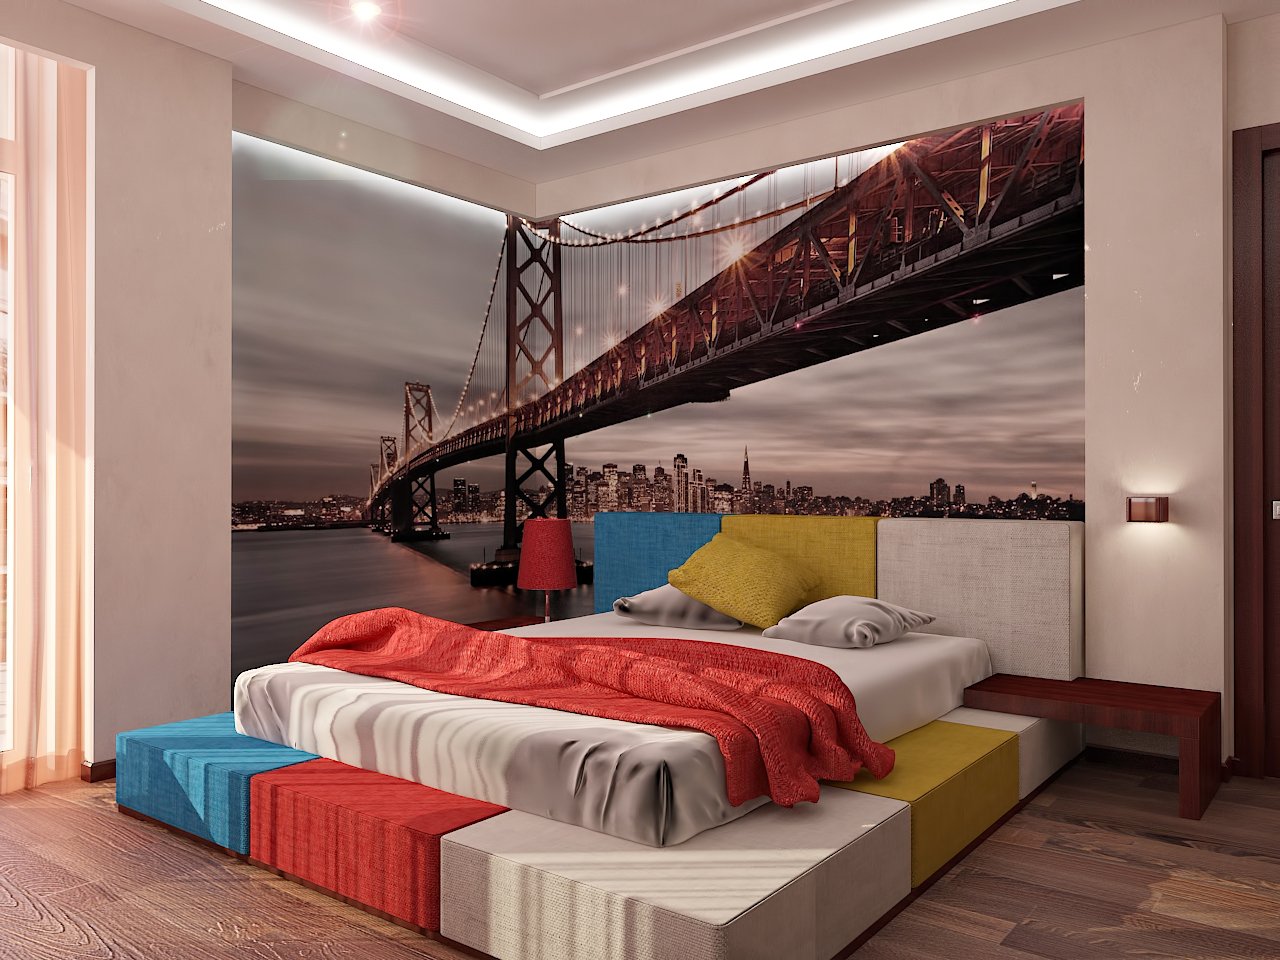 Дизайн спальни Киев фото обои на стенах, подсветка кровати, современый стиль